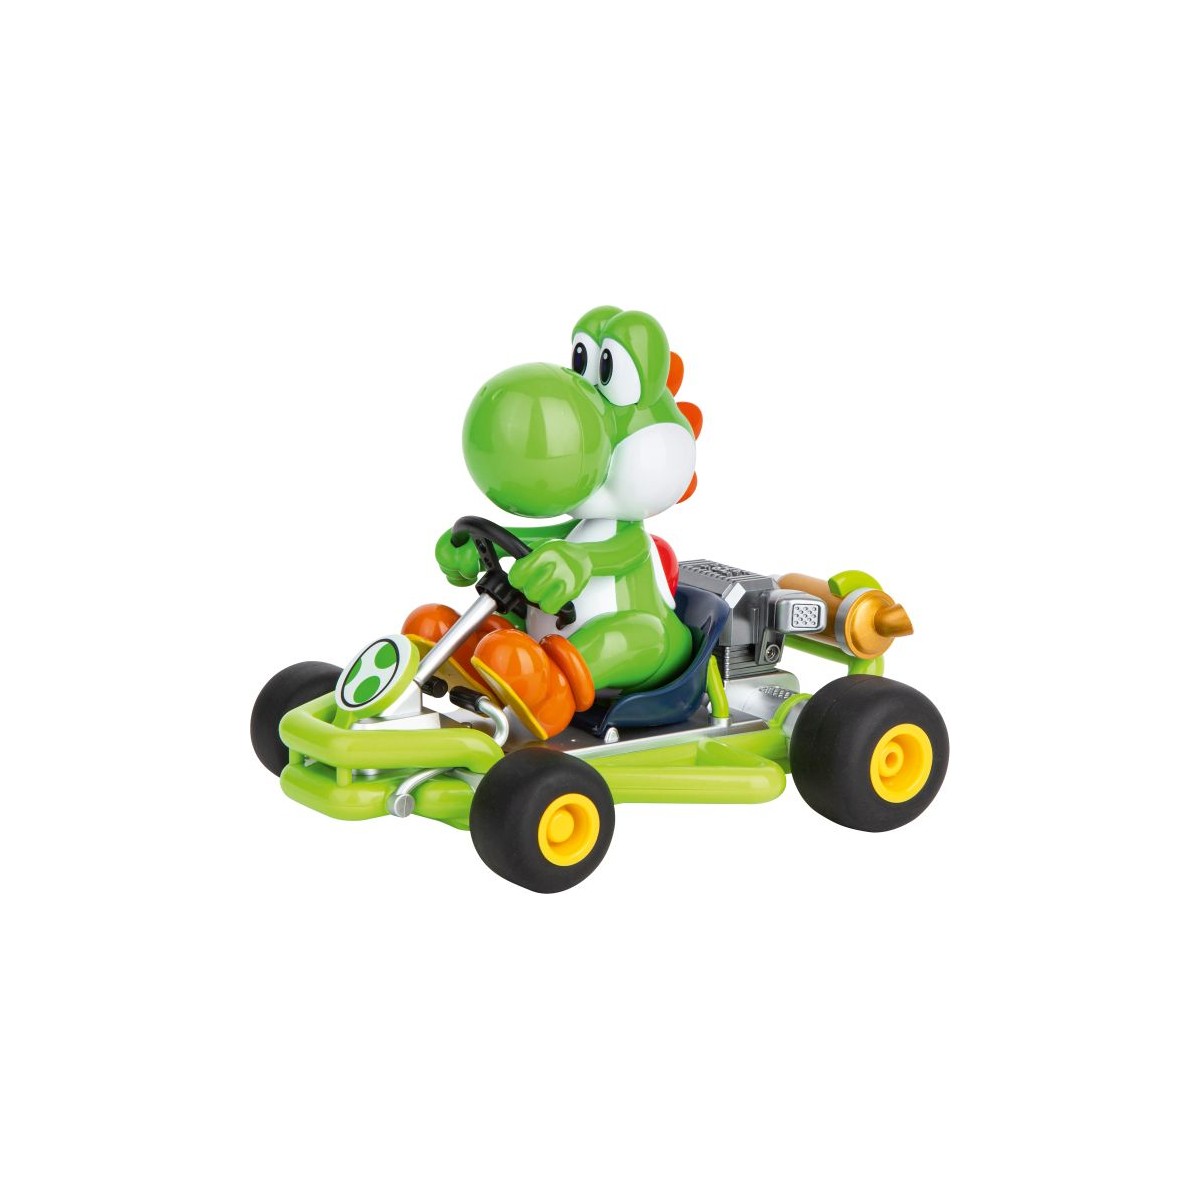 RC 2,4GHz Mario Kart - Pipe Kart, Yoshi